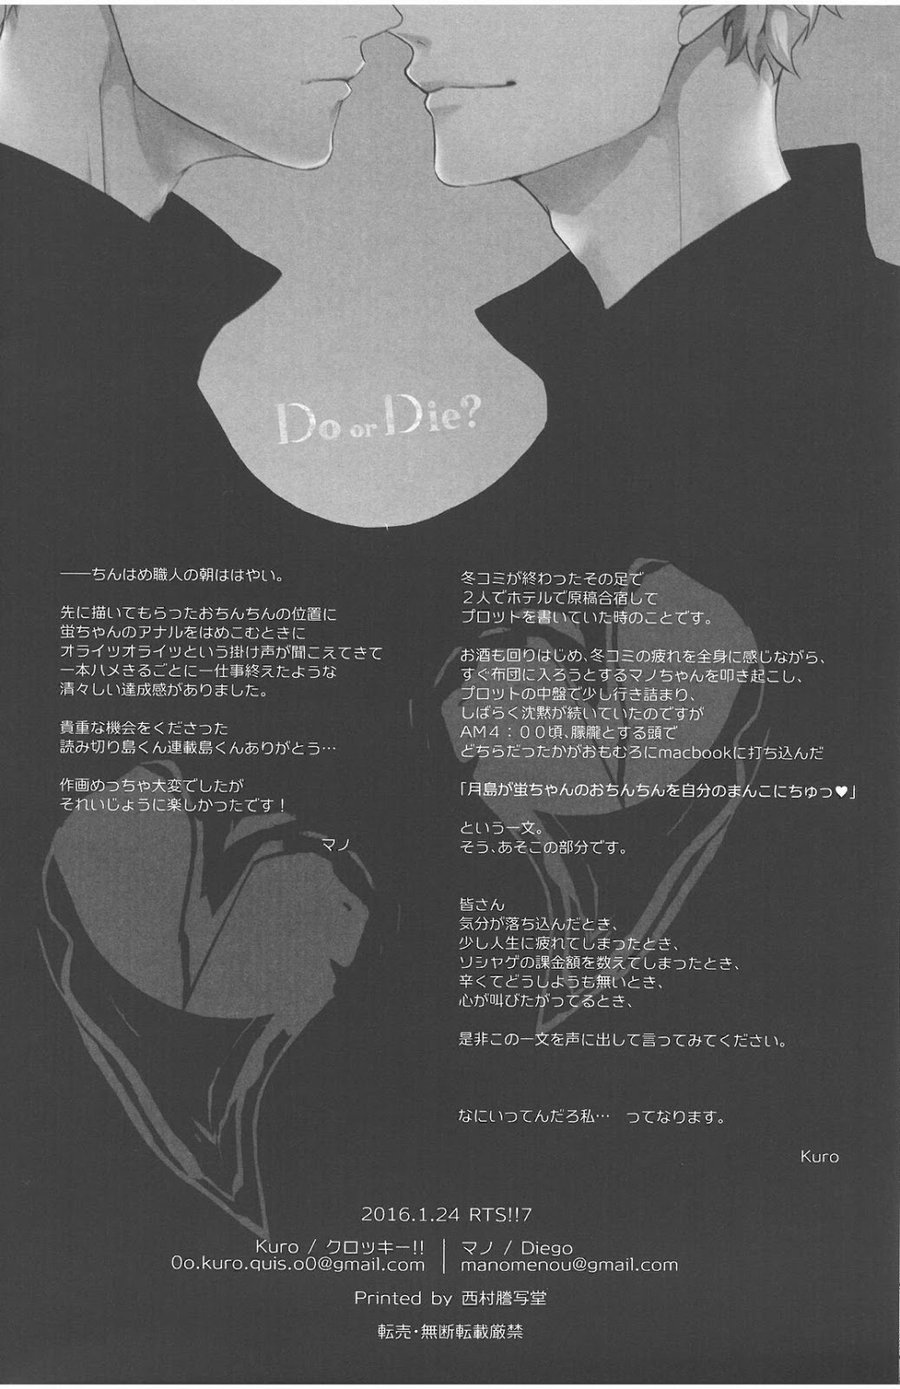 Do or Die?